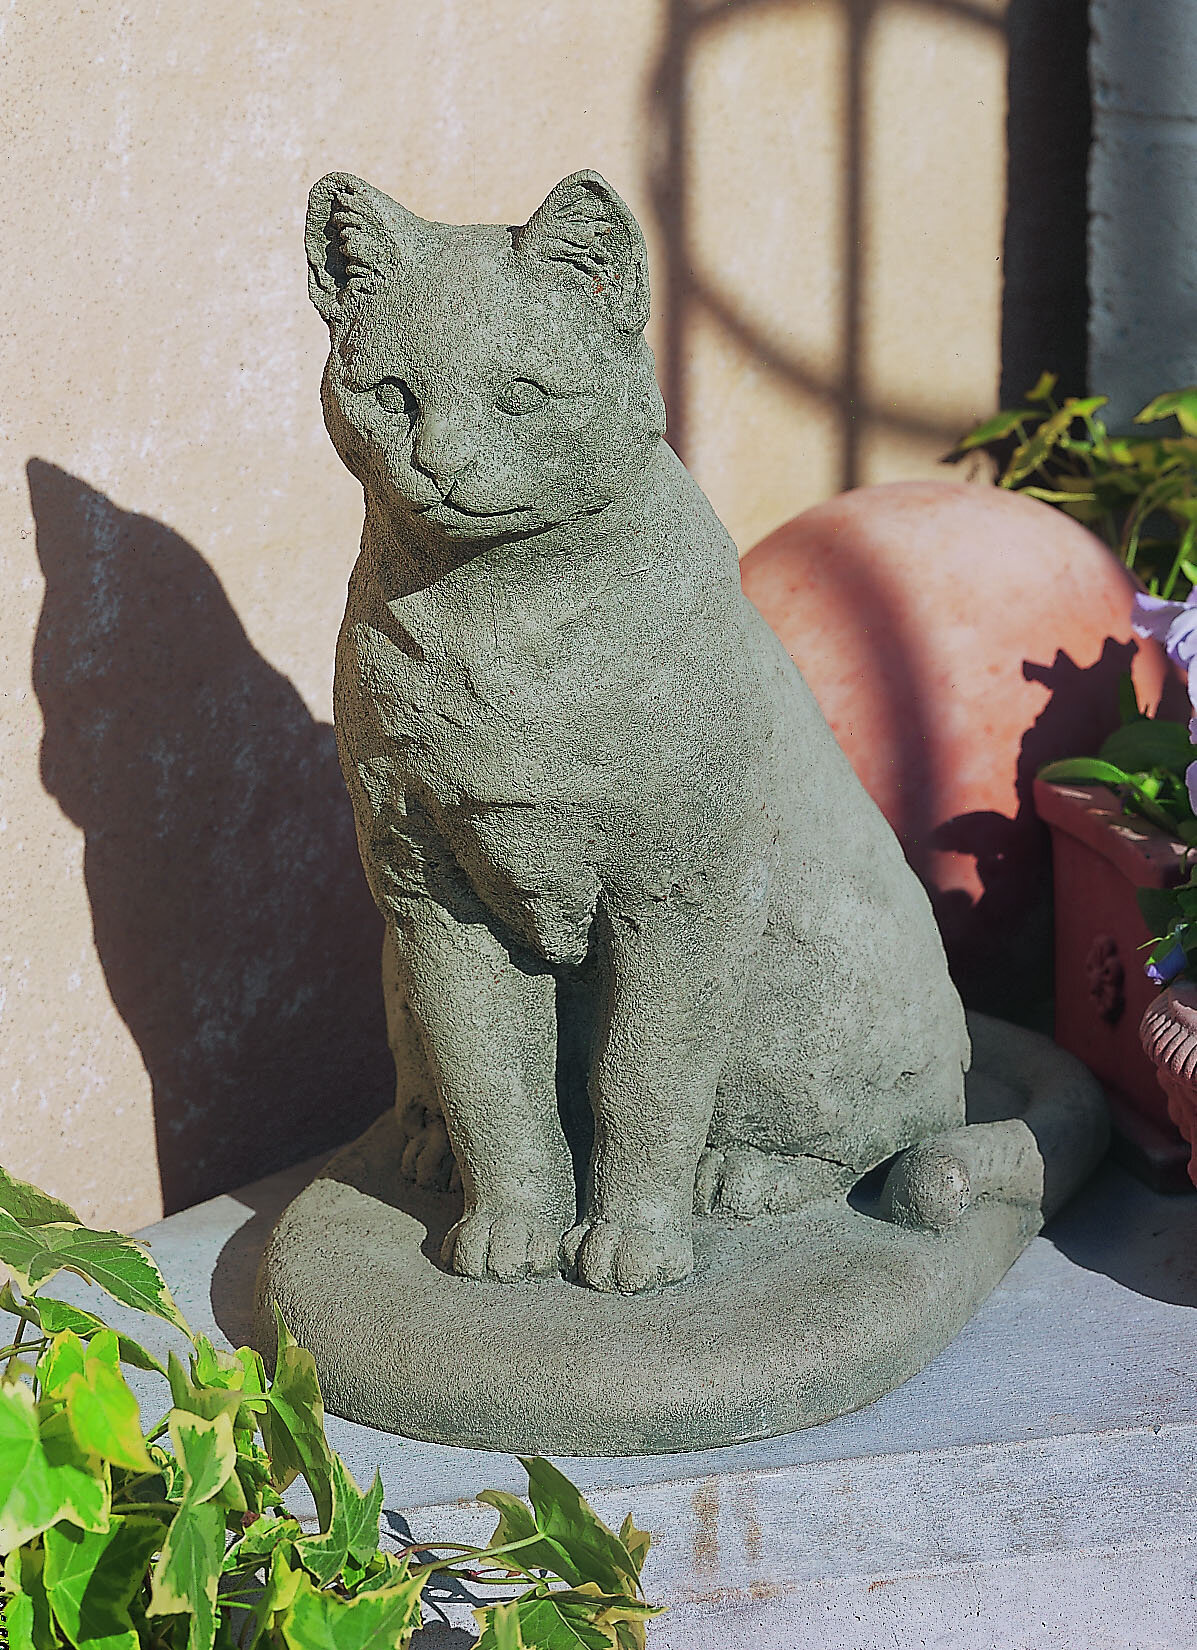 https://assets.wfcdn.com/im/01818551/compr-r85/1467/14677662/garden-cat-statue.jpg